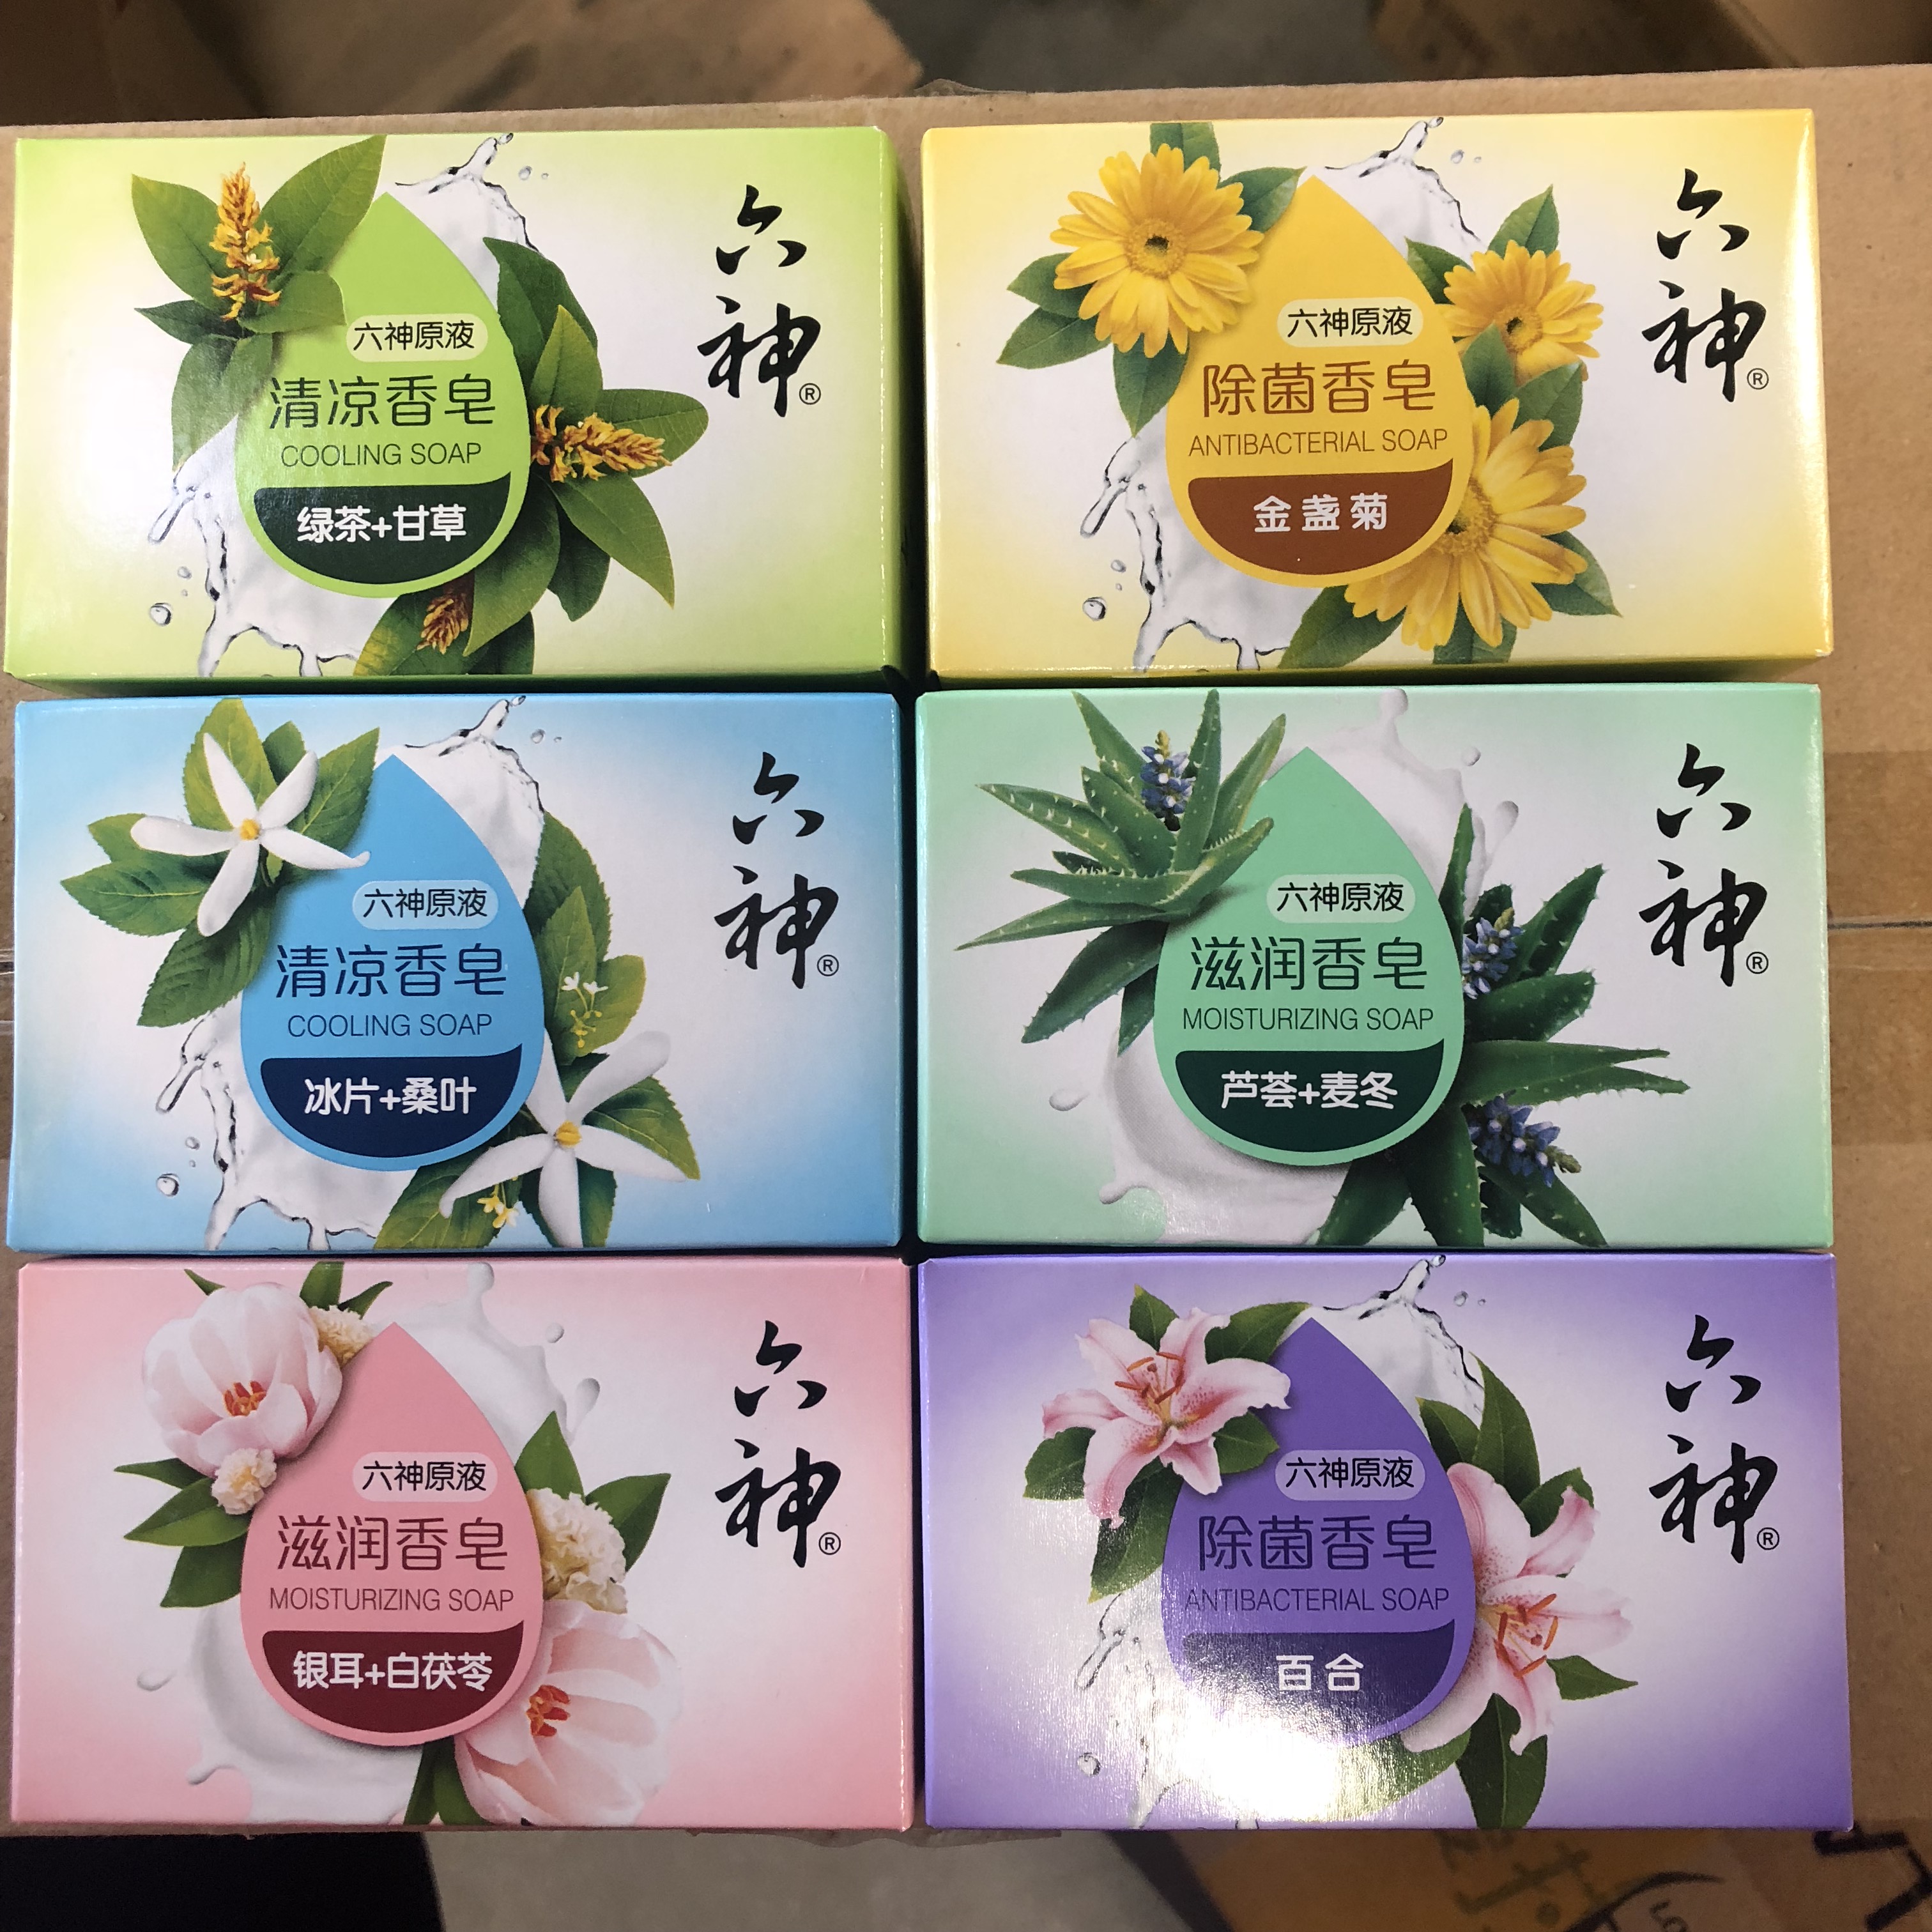 【多品种】六神香皂绿茶冰片清凉冰爽芦荟滋润金盏菊108g清洁